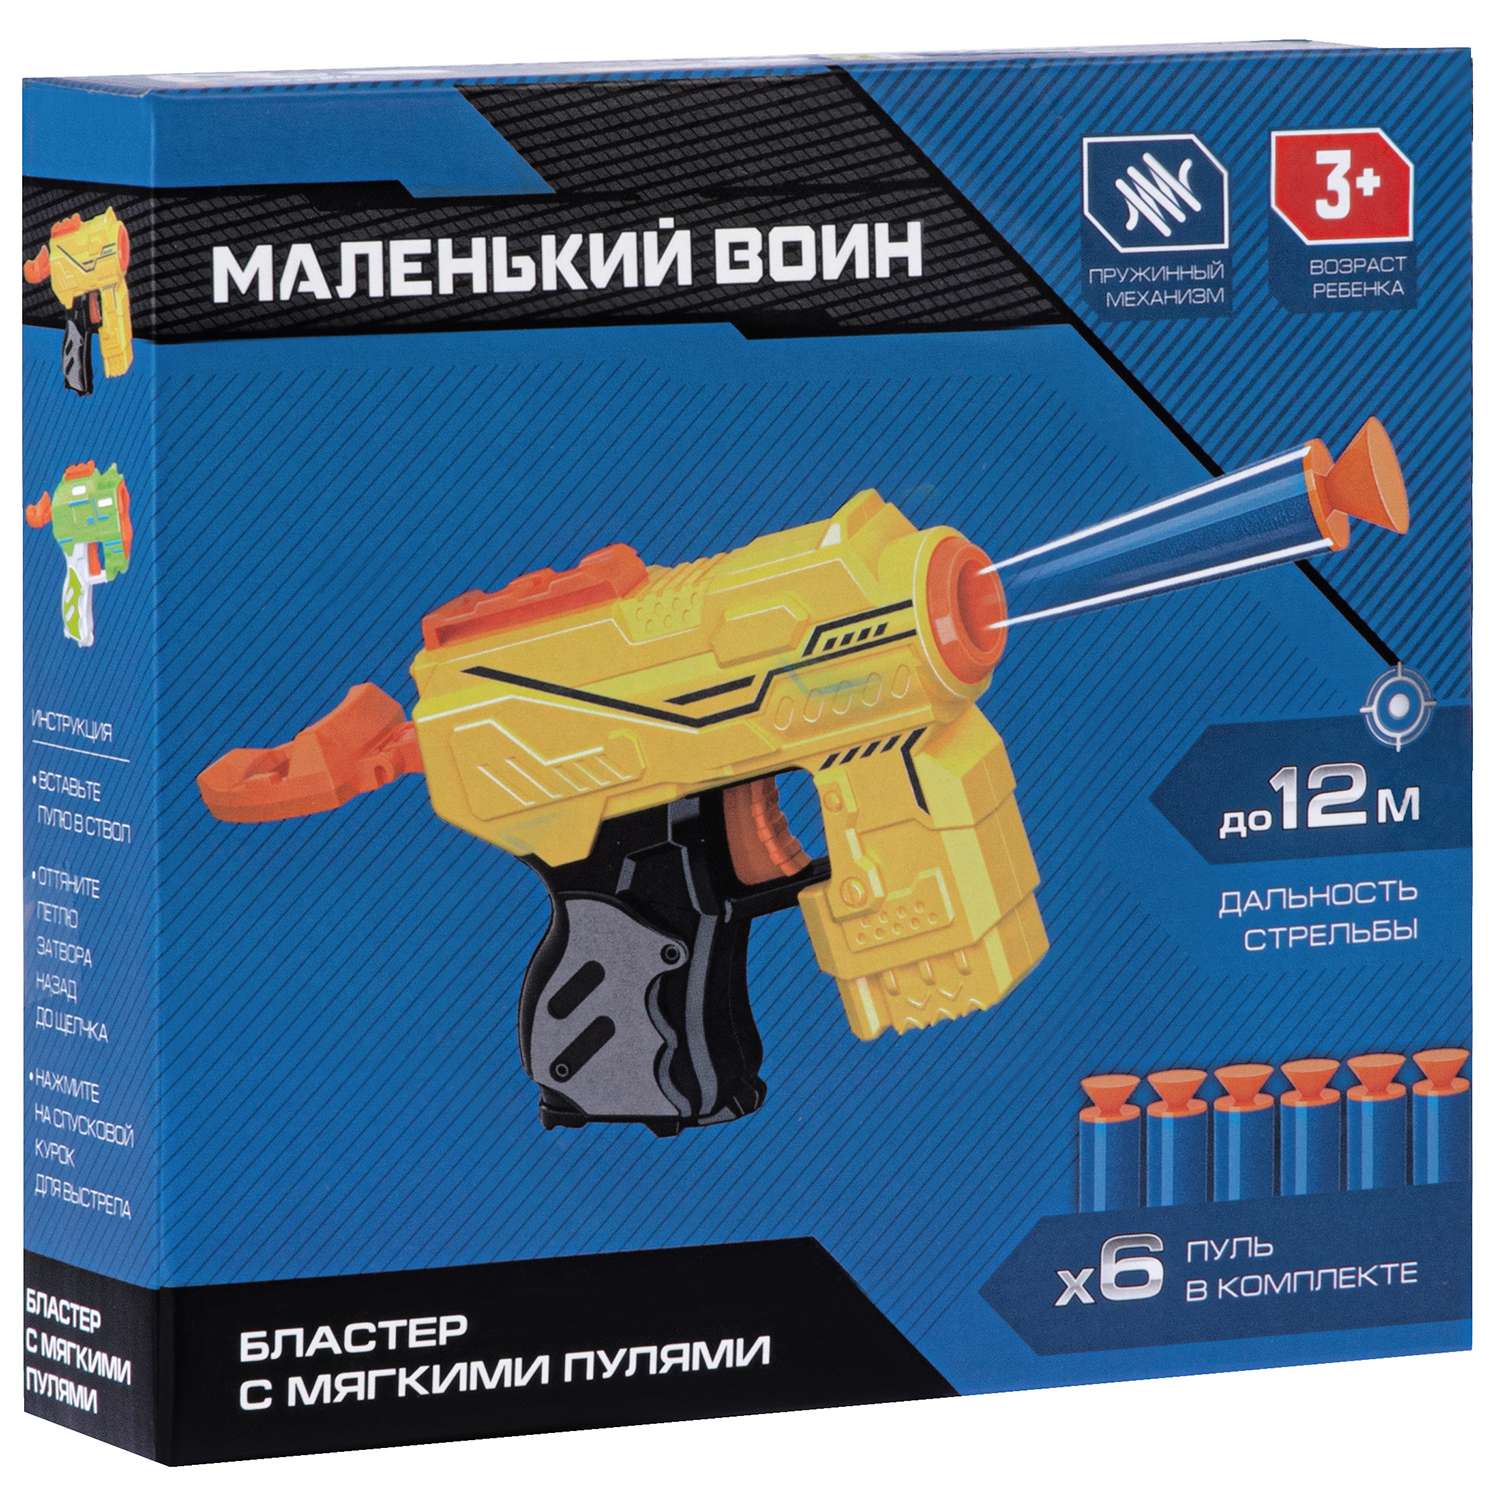 Игрушечное оружие Маленький Воин Бластер с мягкими пулями ручной затвор JB0211466 - фото 8